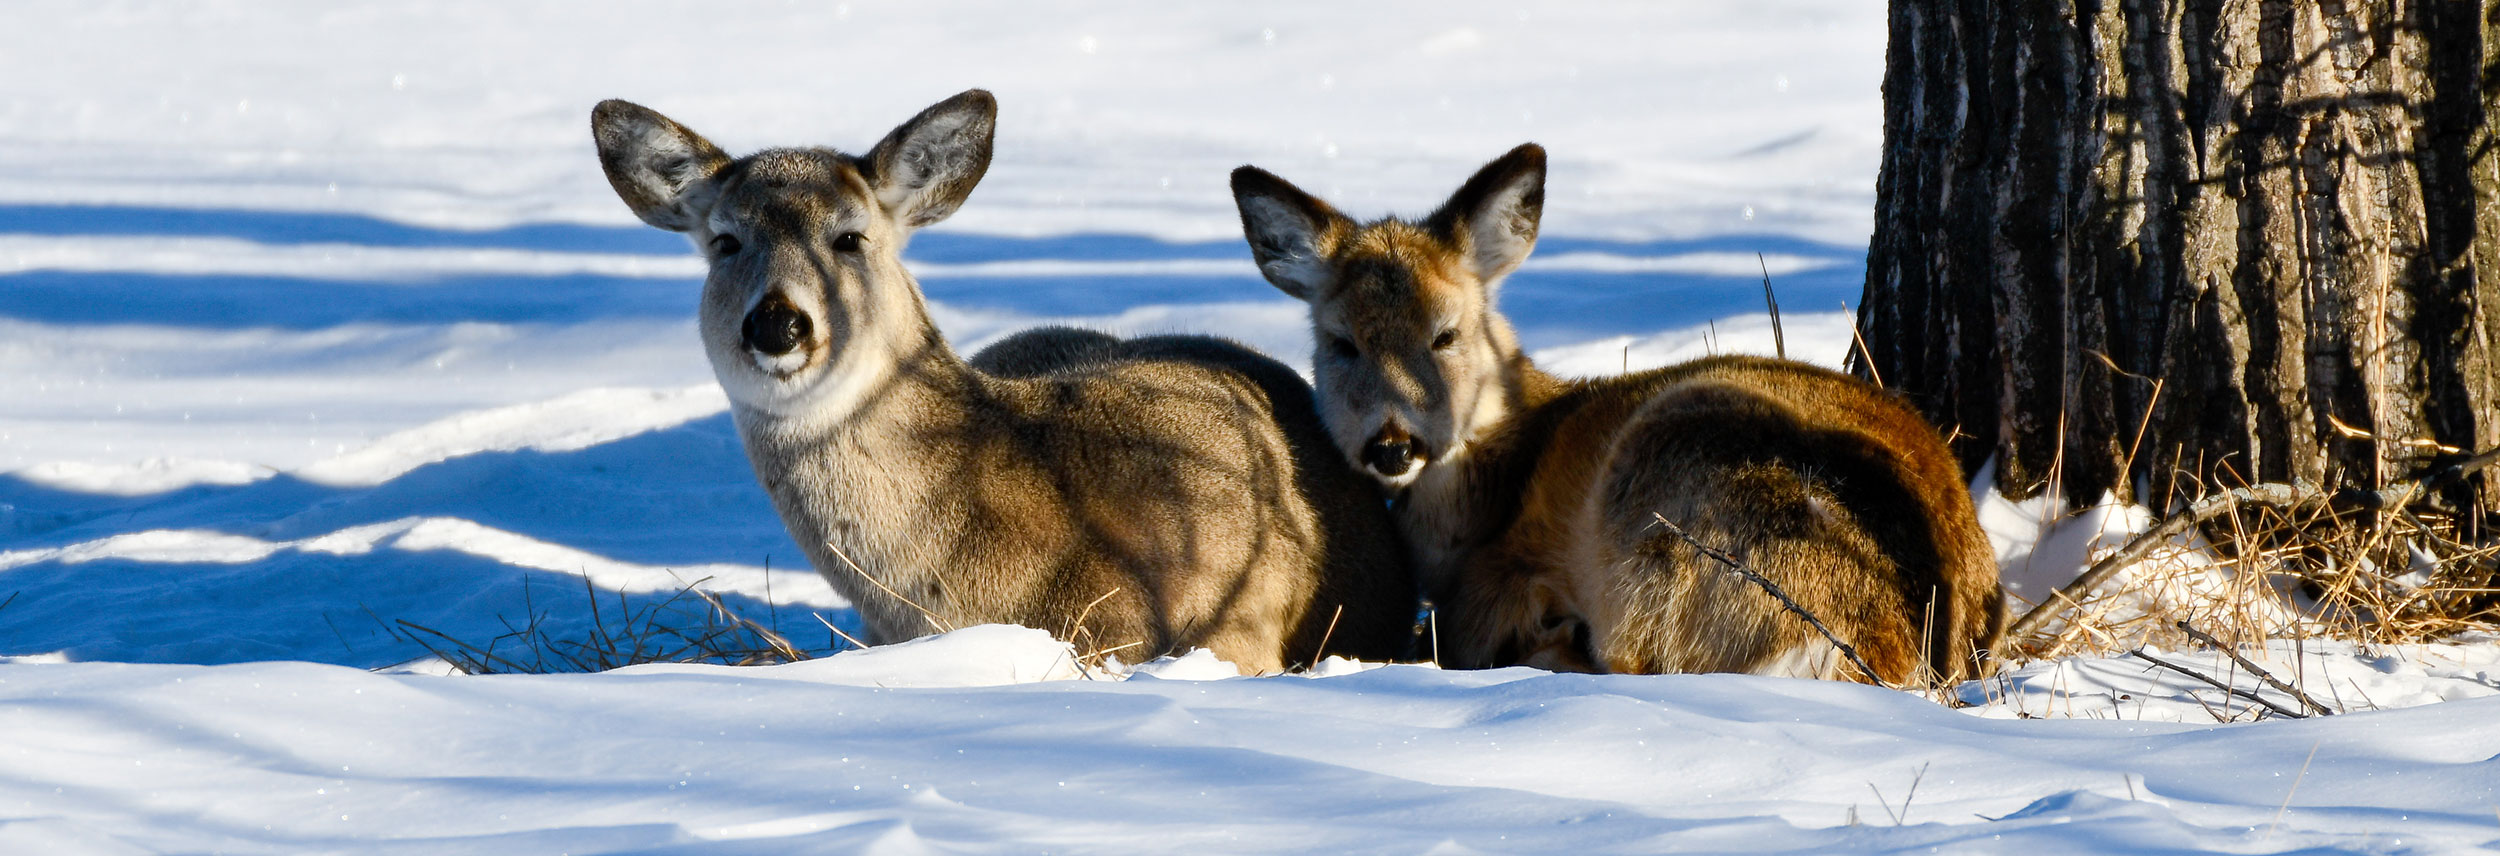 Deer lying in snow